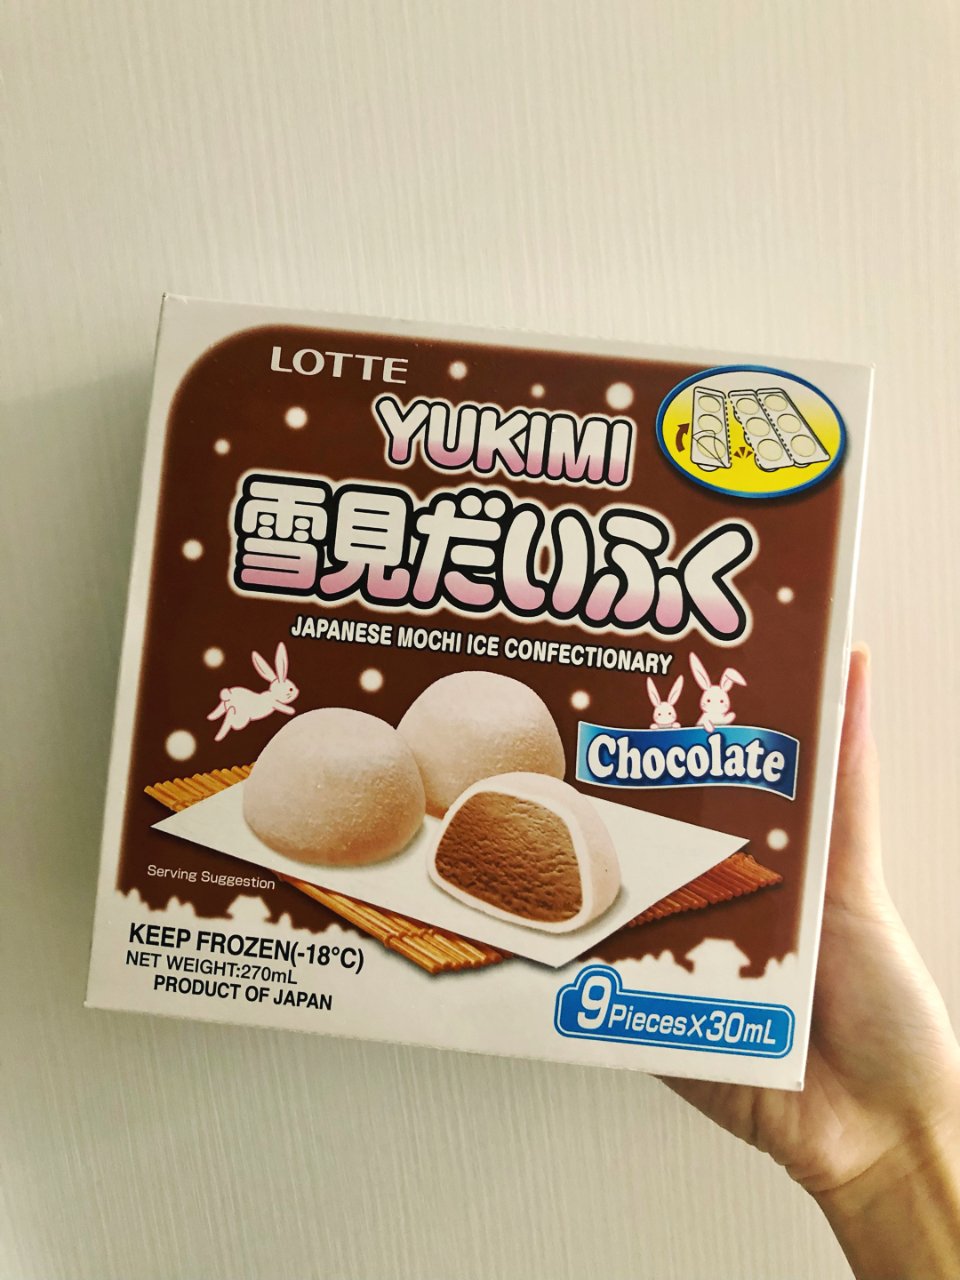 夏日冰品 乐天雪见大福 巧克力🍫味...